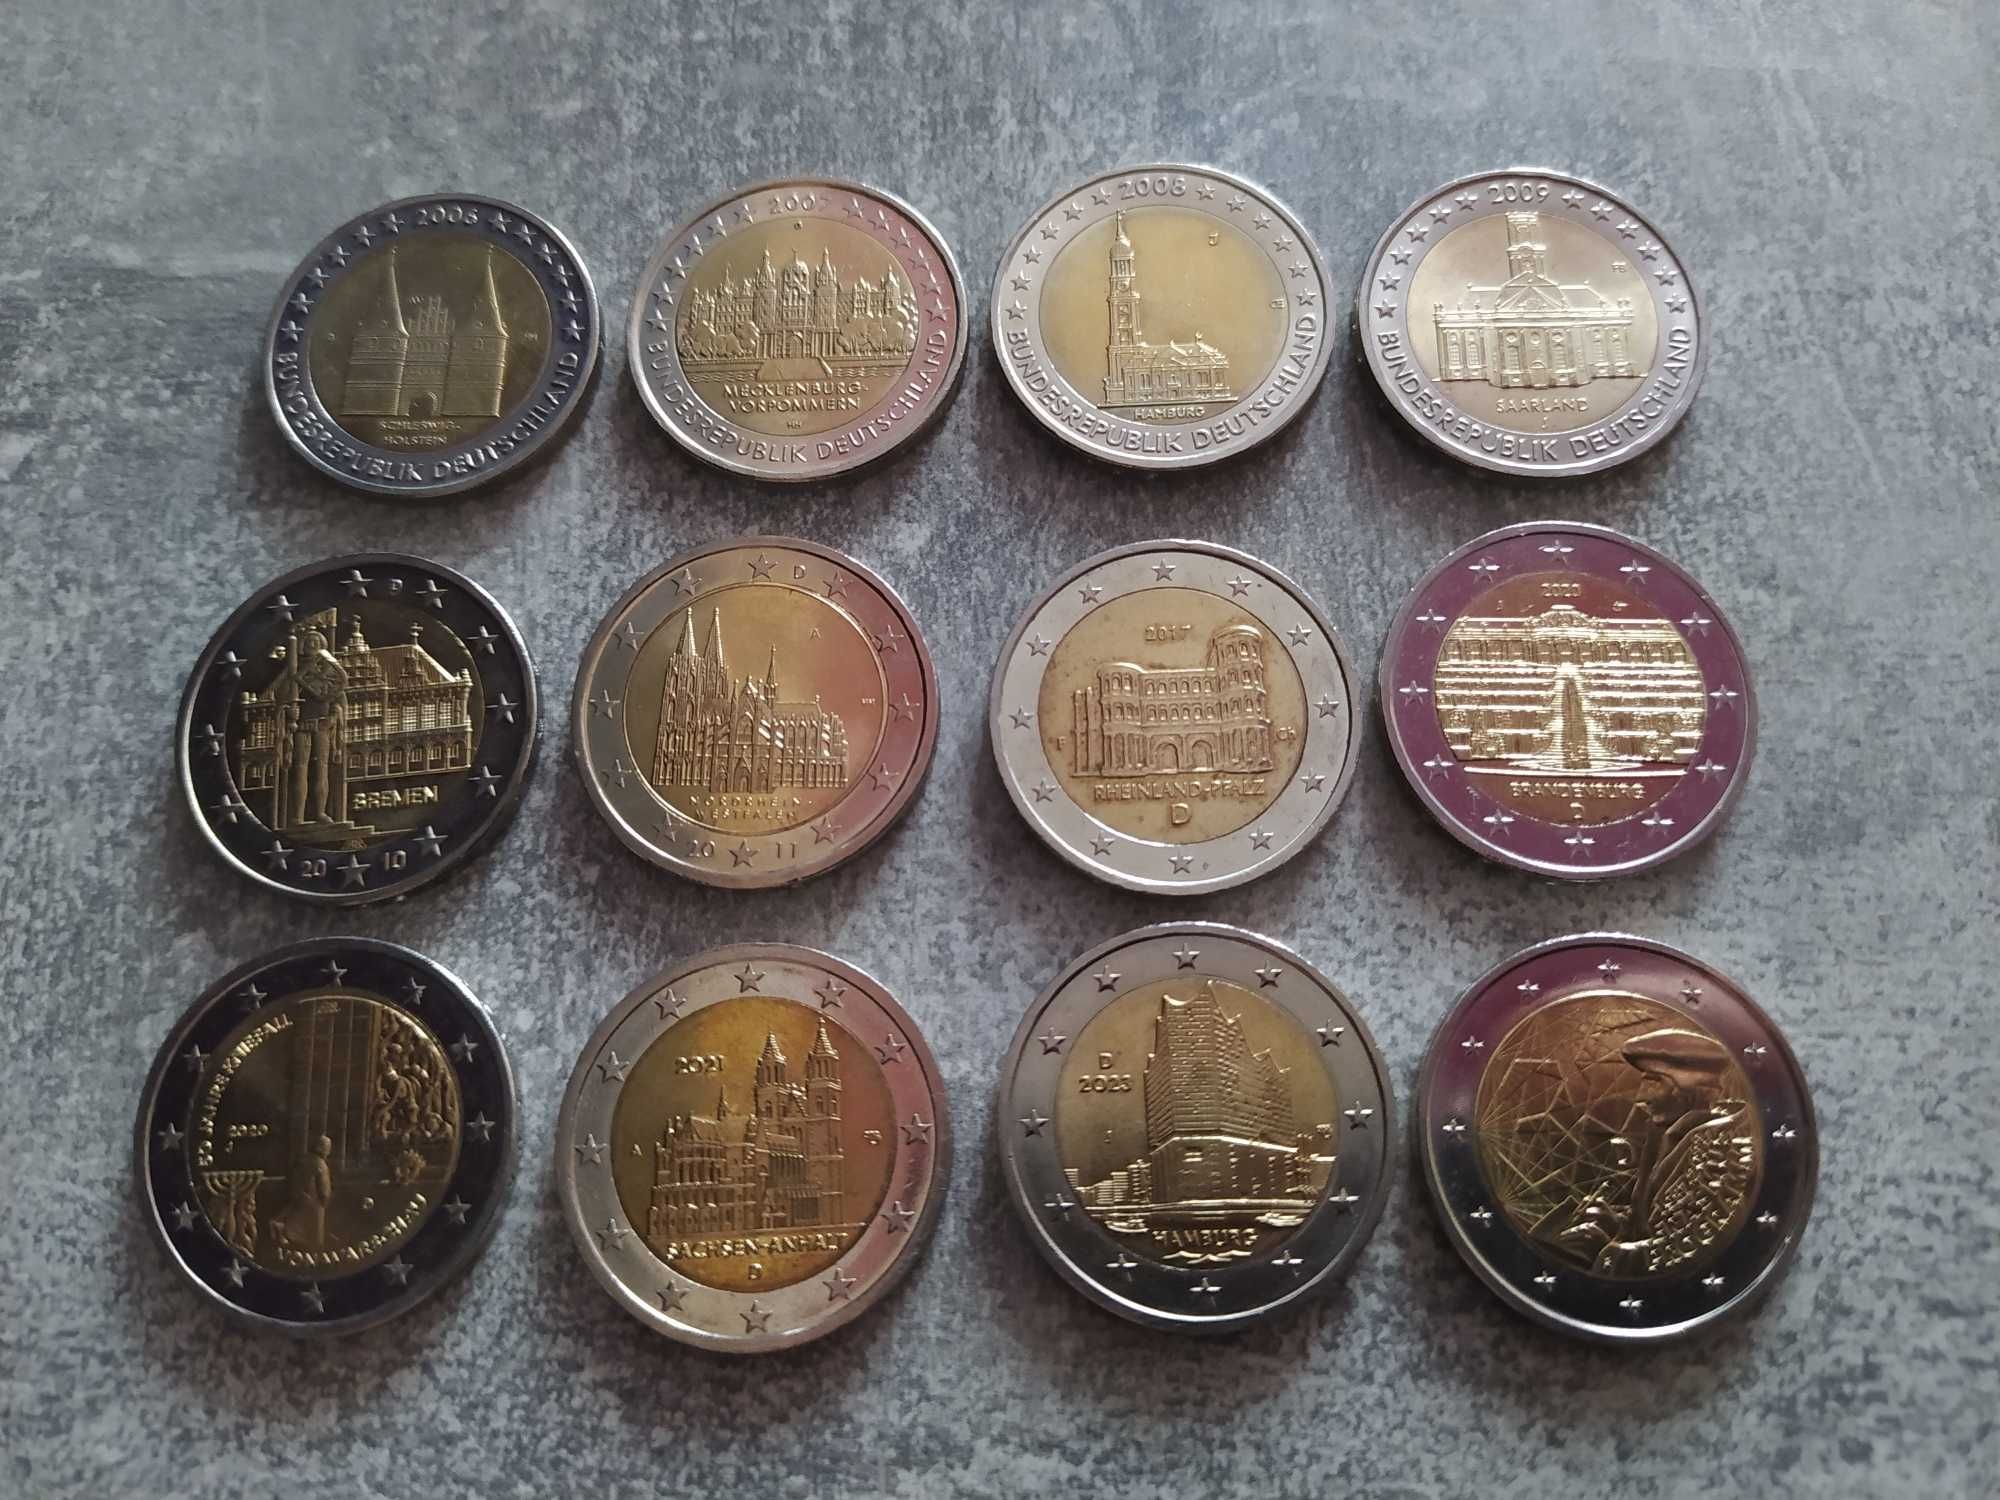 Юбилейные монеты 2 евро